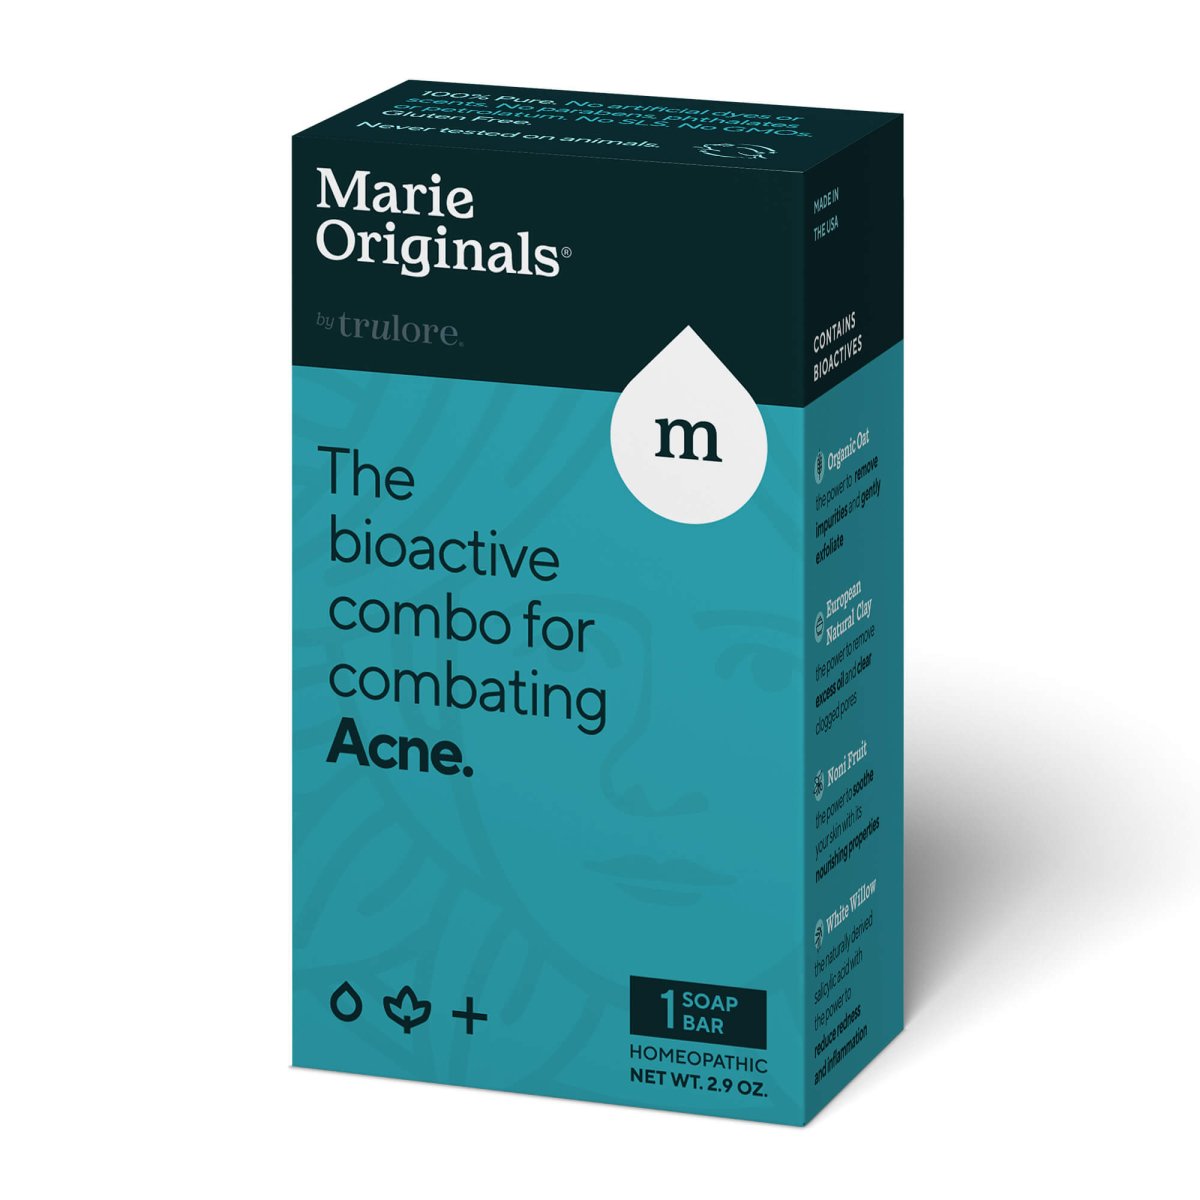 Acne Control SoapSkin Caremarieoriginals.com